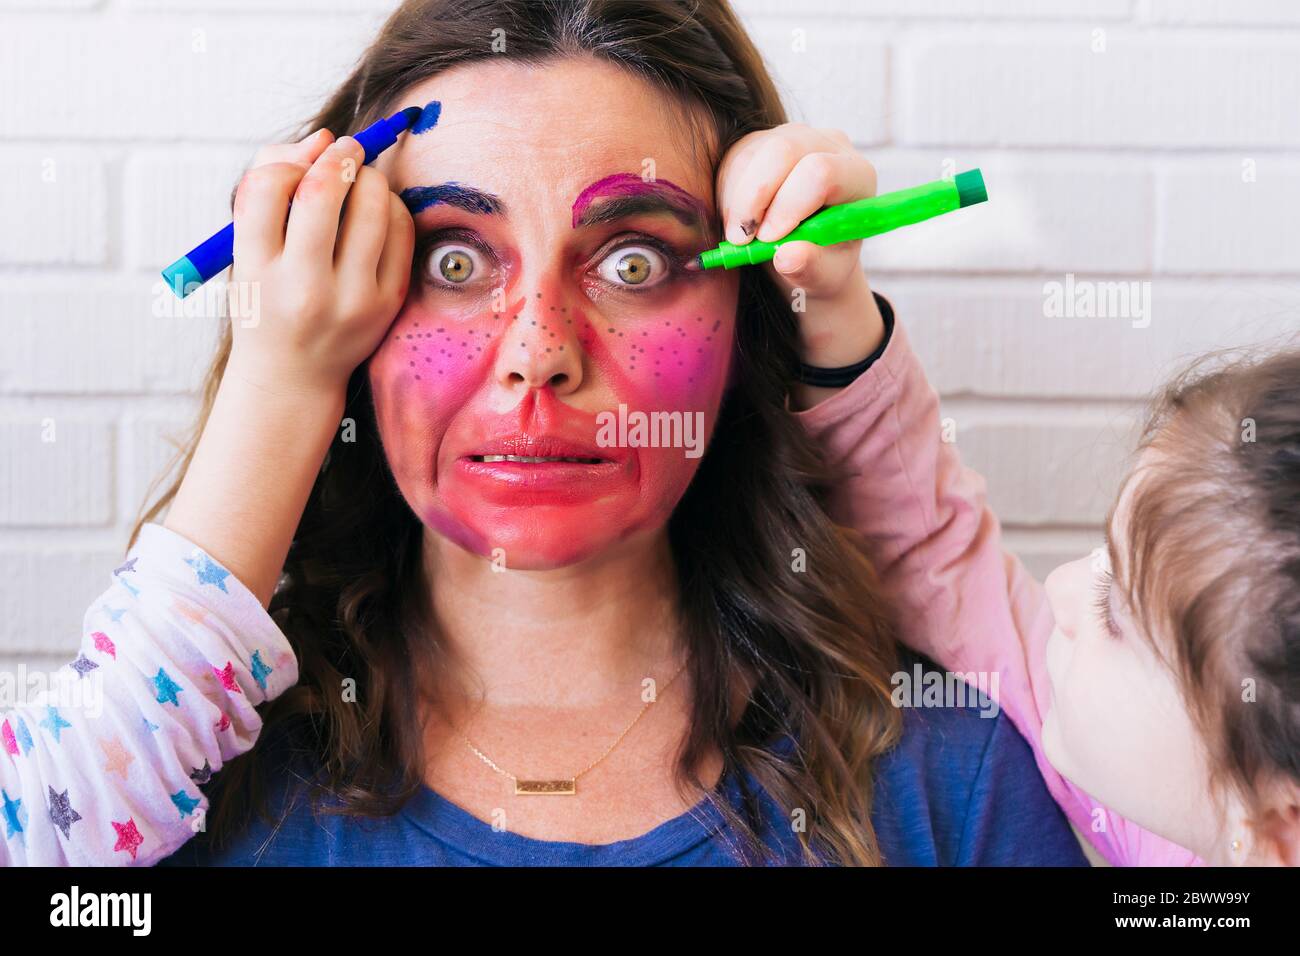 Les filles peignant coloful se forment sur le visage de la mère Banque D'Images